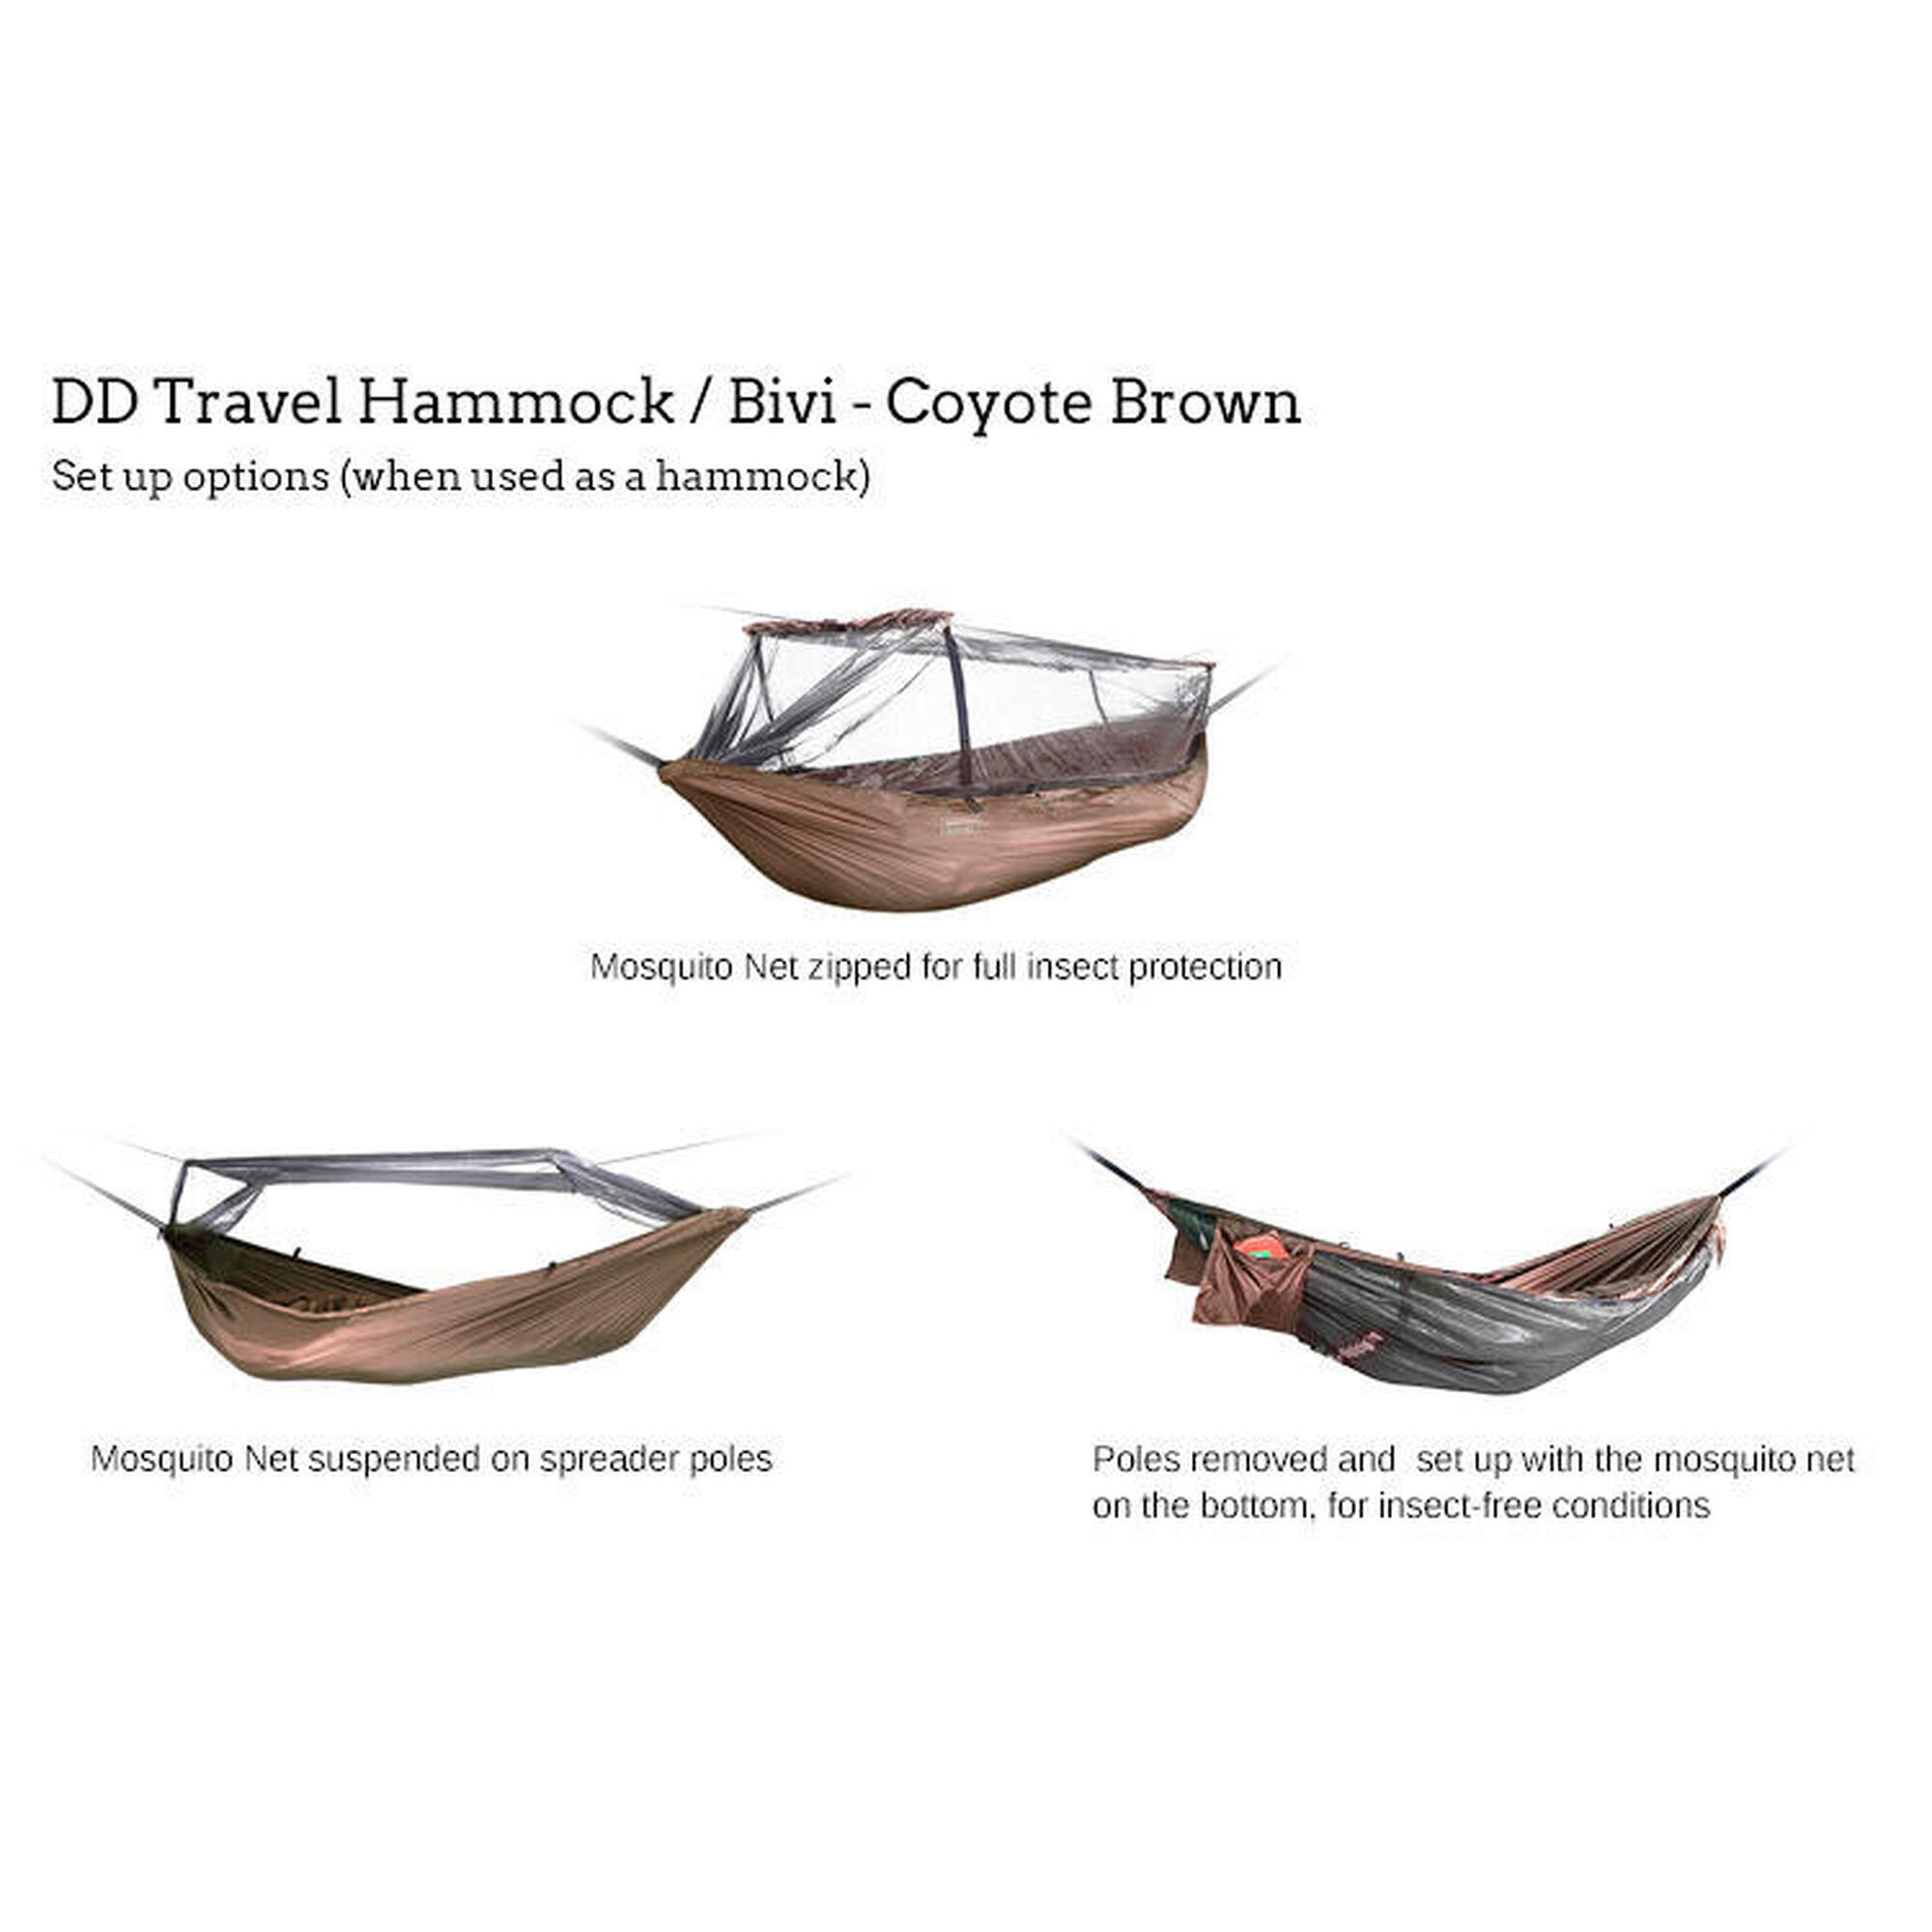 DD Hammocks Travel hangmat/Bivi – Coyote Brown